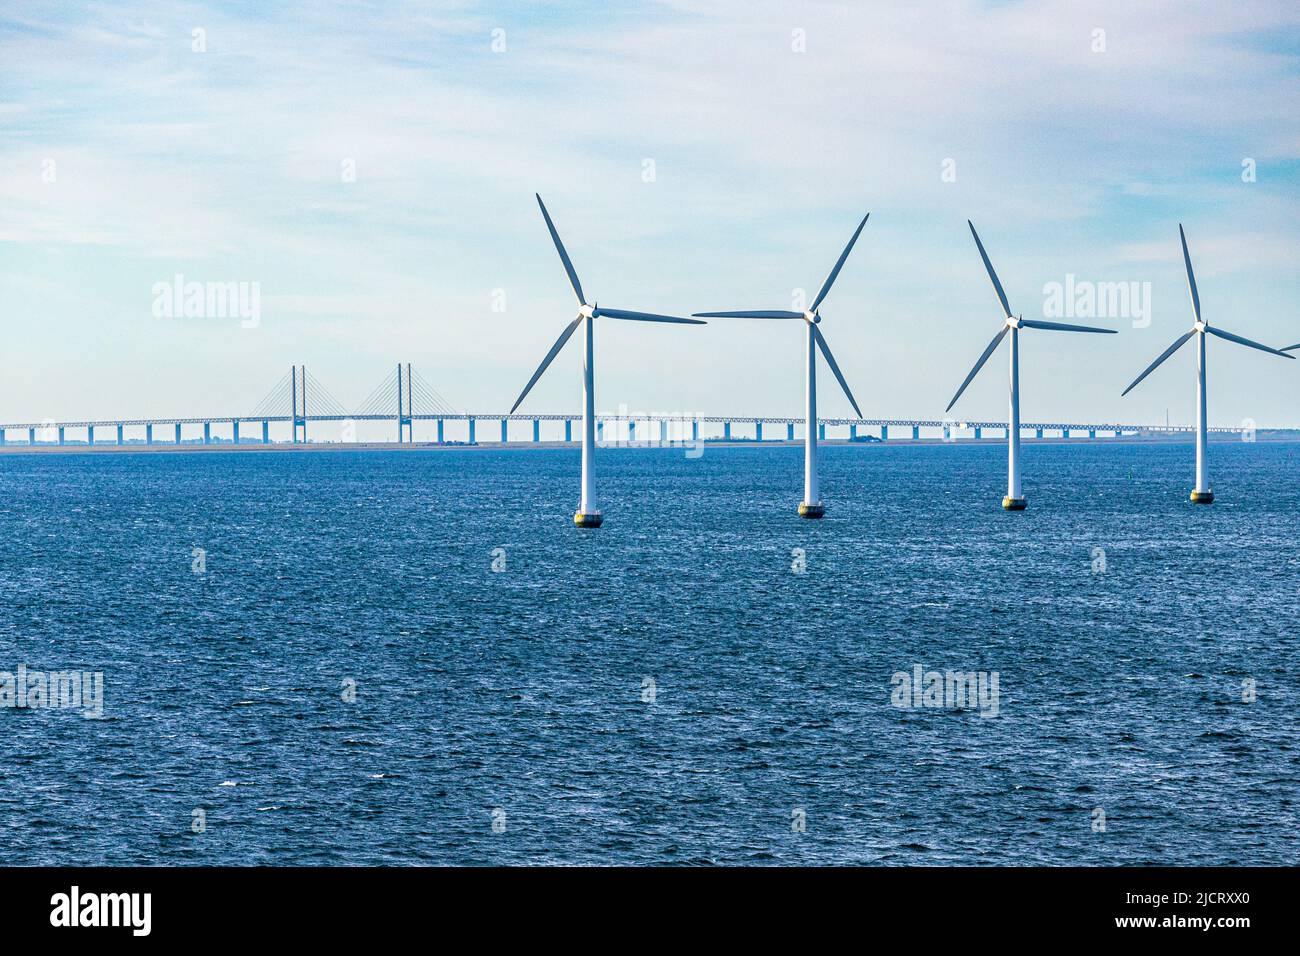 El parque eólico marino Middelgrunden en el Øresund cerca de Copenhague, Dinamarca - Puente Øresund entre Copenhague y Malmo, Suecia está en el backgroun Foto de stock